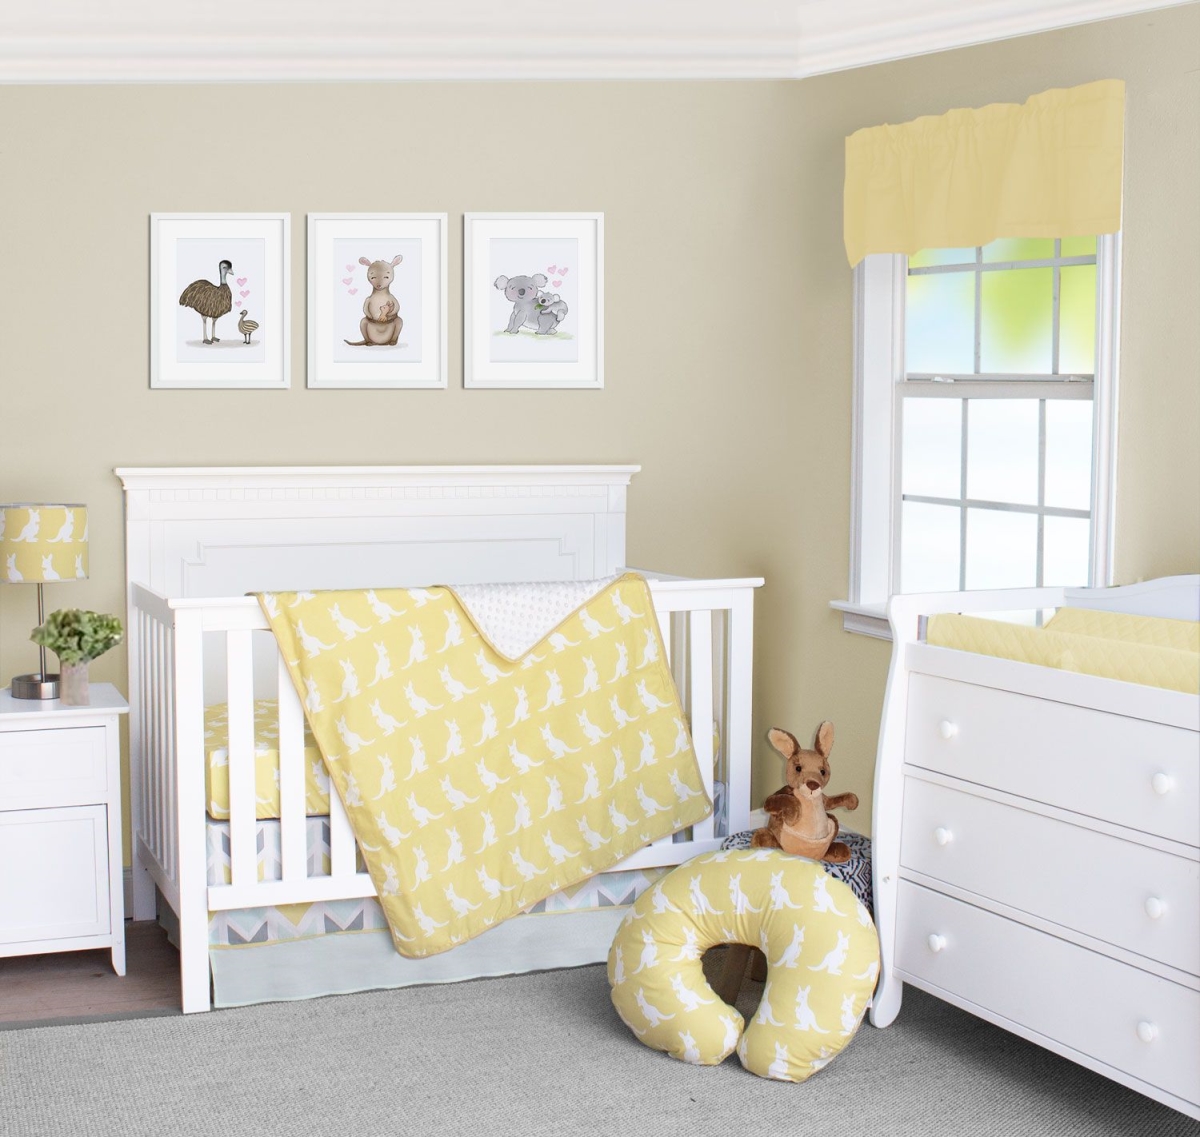 Bdnb-3-kangaroo Honeydew Kangaroo Crib Bedding Set Yellow Gold & White - 3 Piece